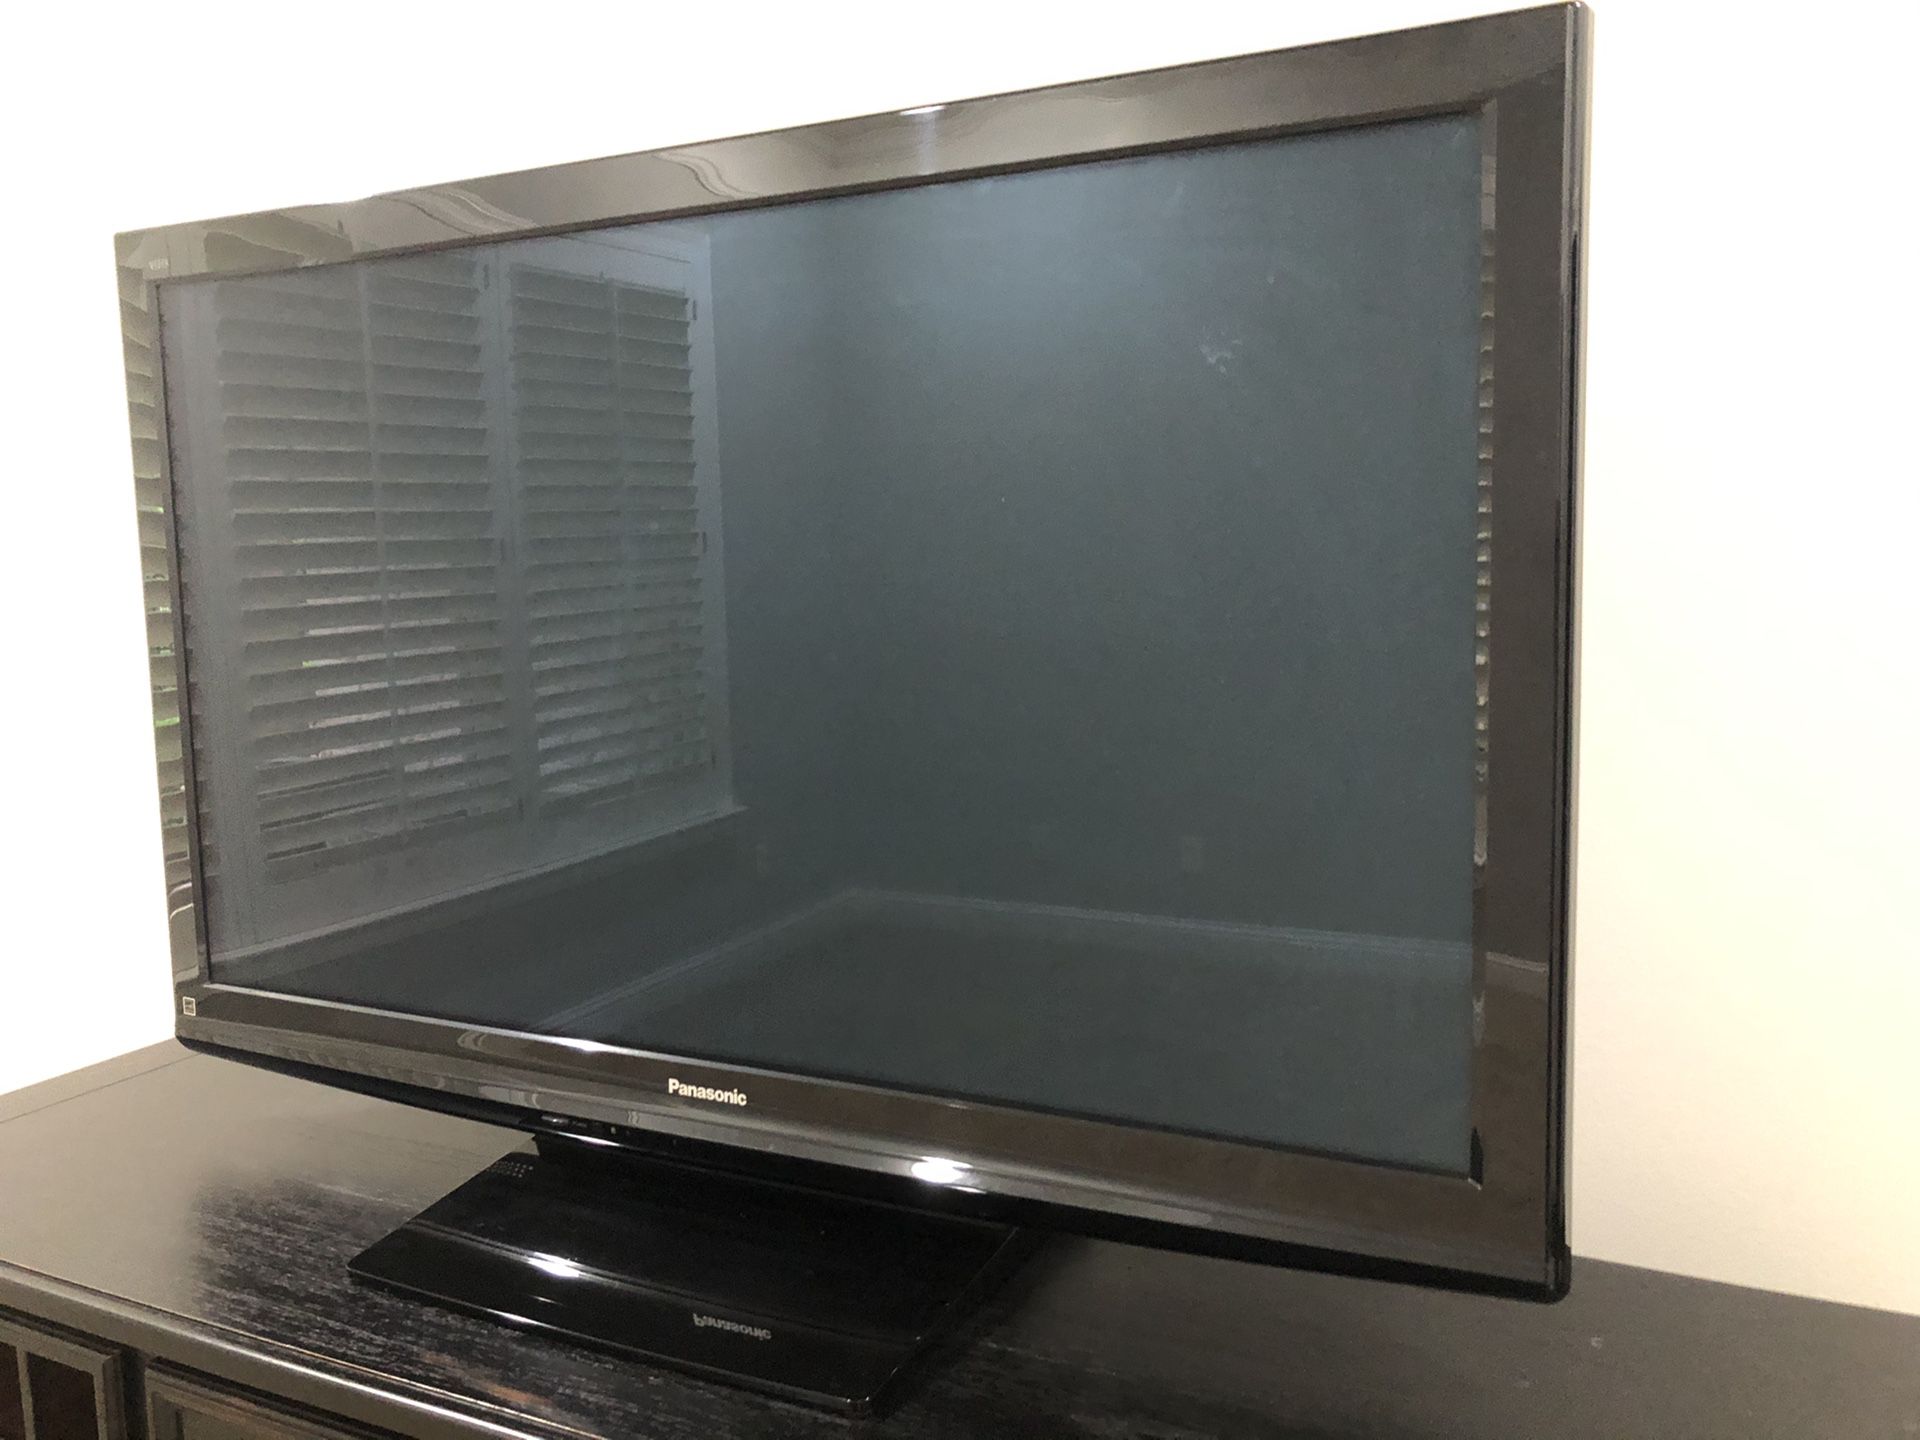 50” Panasonic LCD TV.